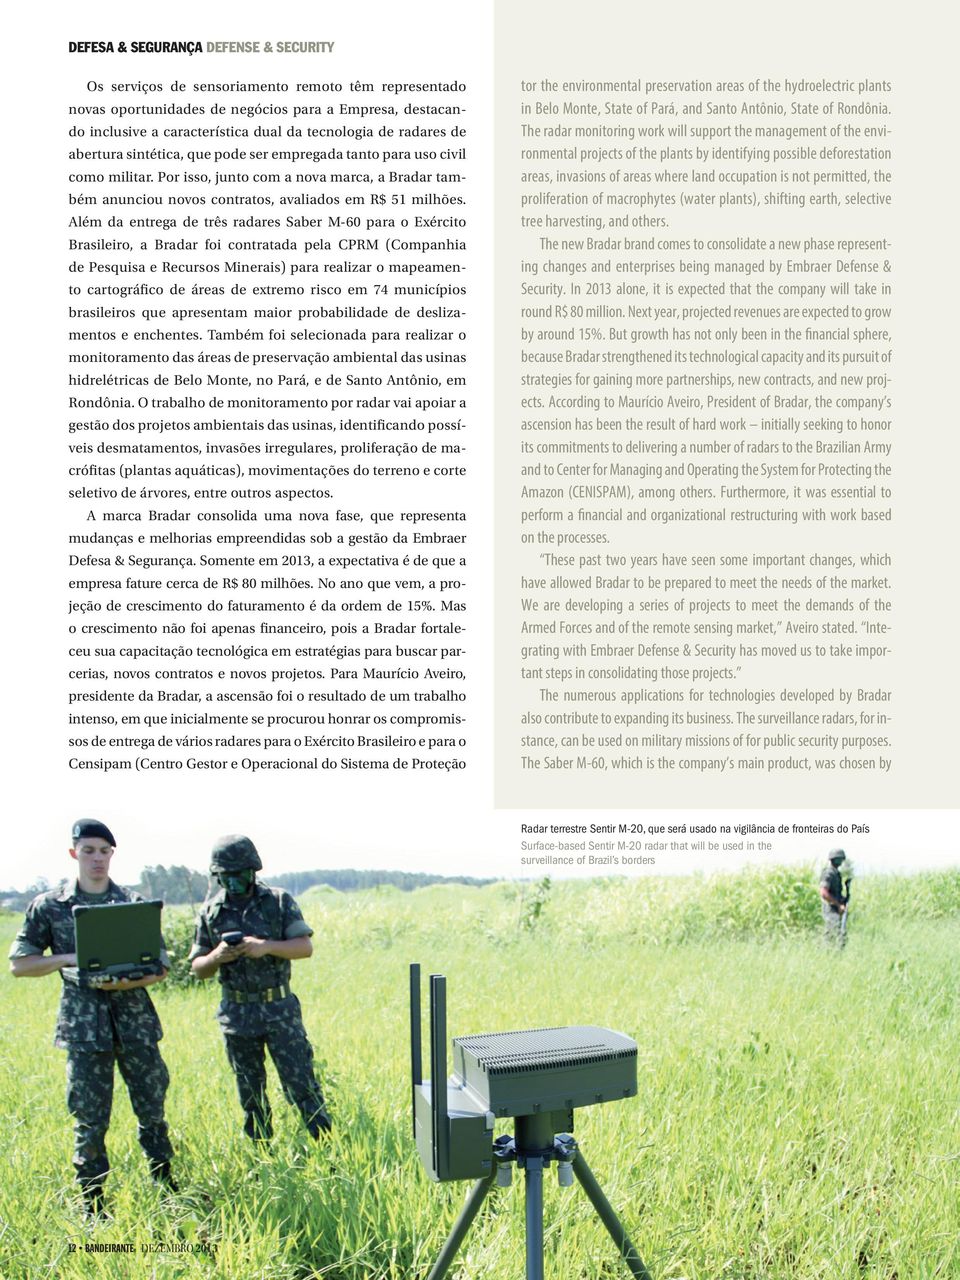 Além da entrega de três radares Saber M-60 para o Exército Brasileiro, a Bradar foi contratada pela CPRM (Companhia de Pesquisa e Recursos Minerais) para realizar o mapeamento cartográfico de áreas